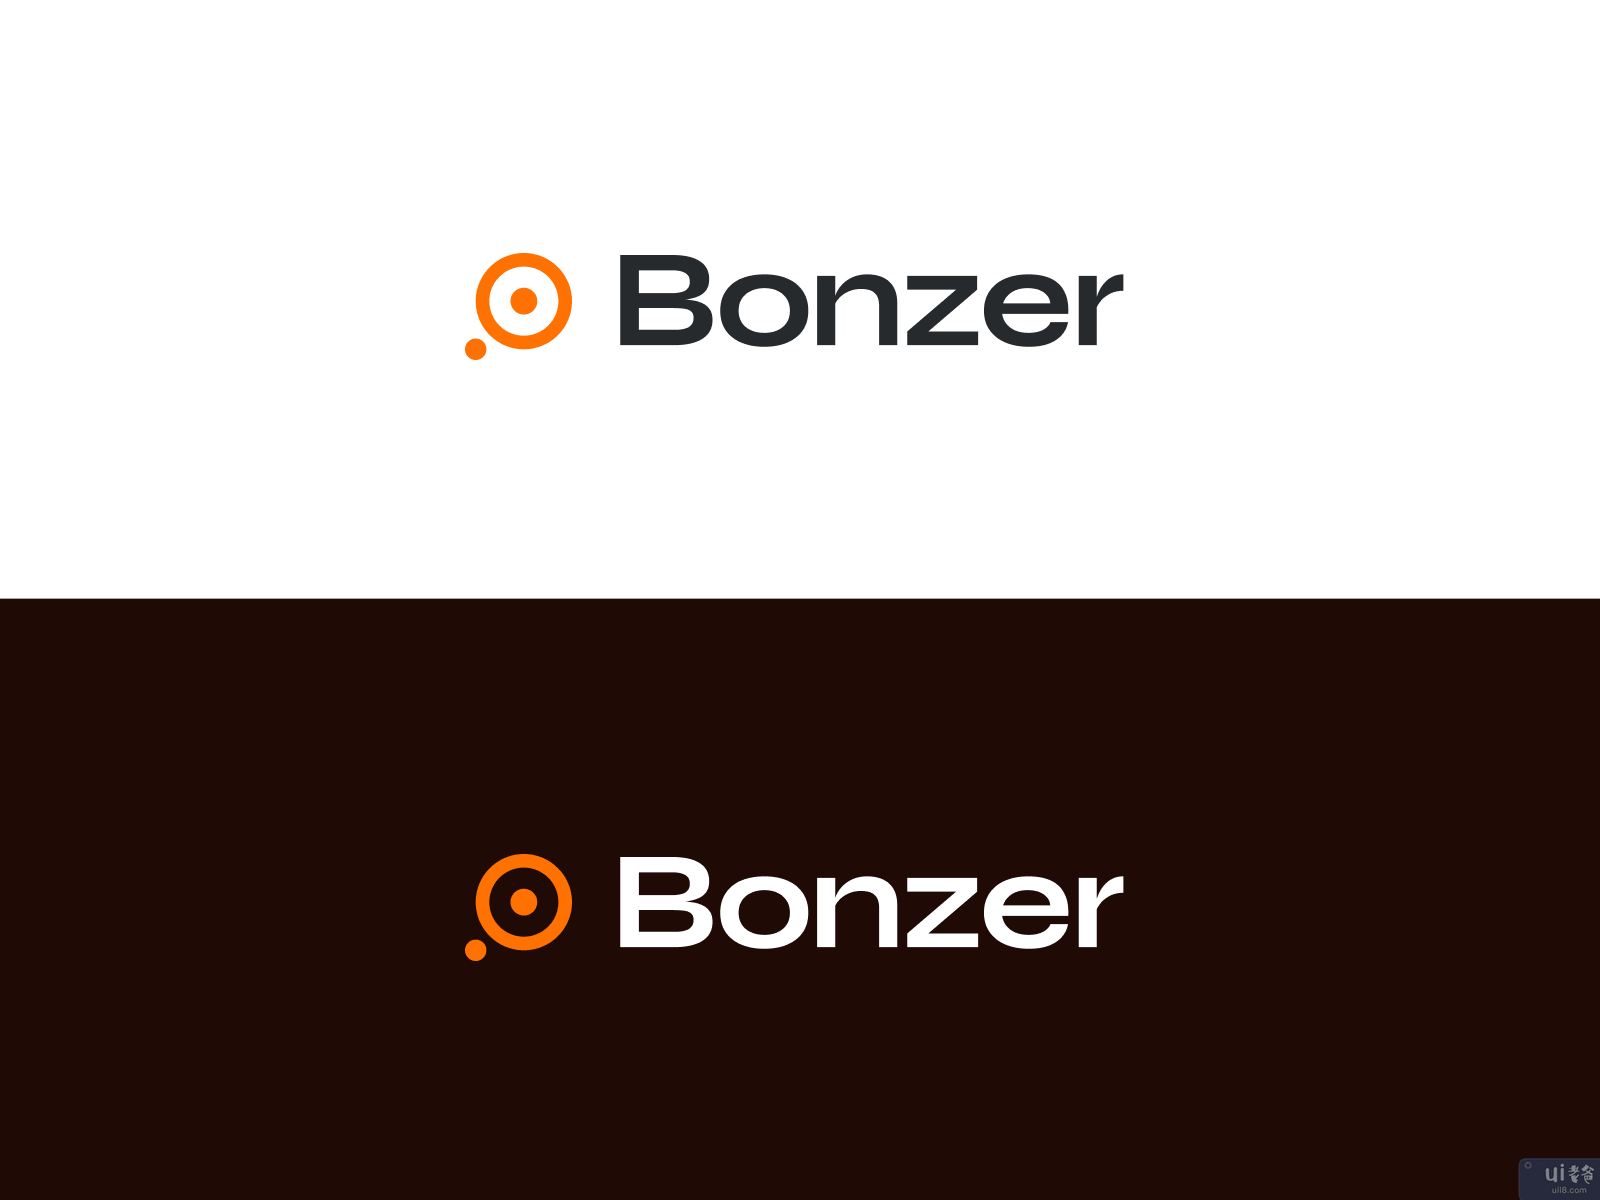 邦泽品牌形象(Bonzer Brand Identity  ?)插图1